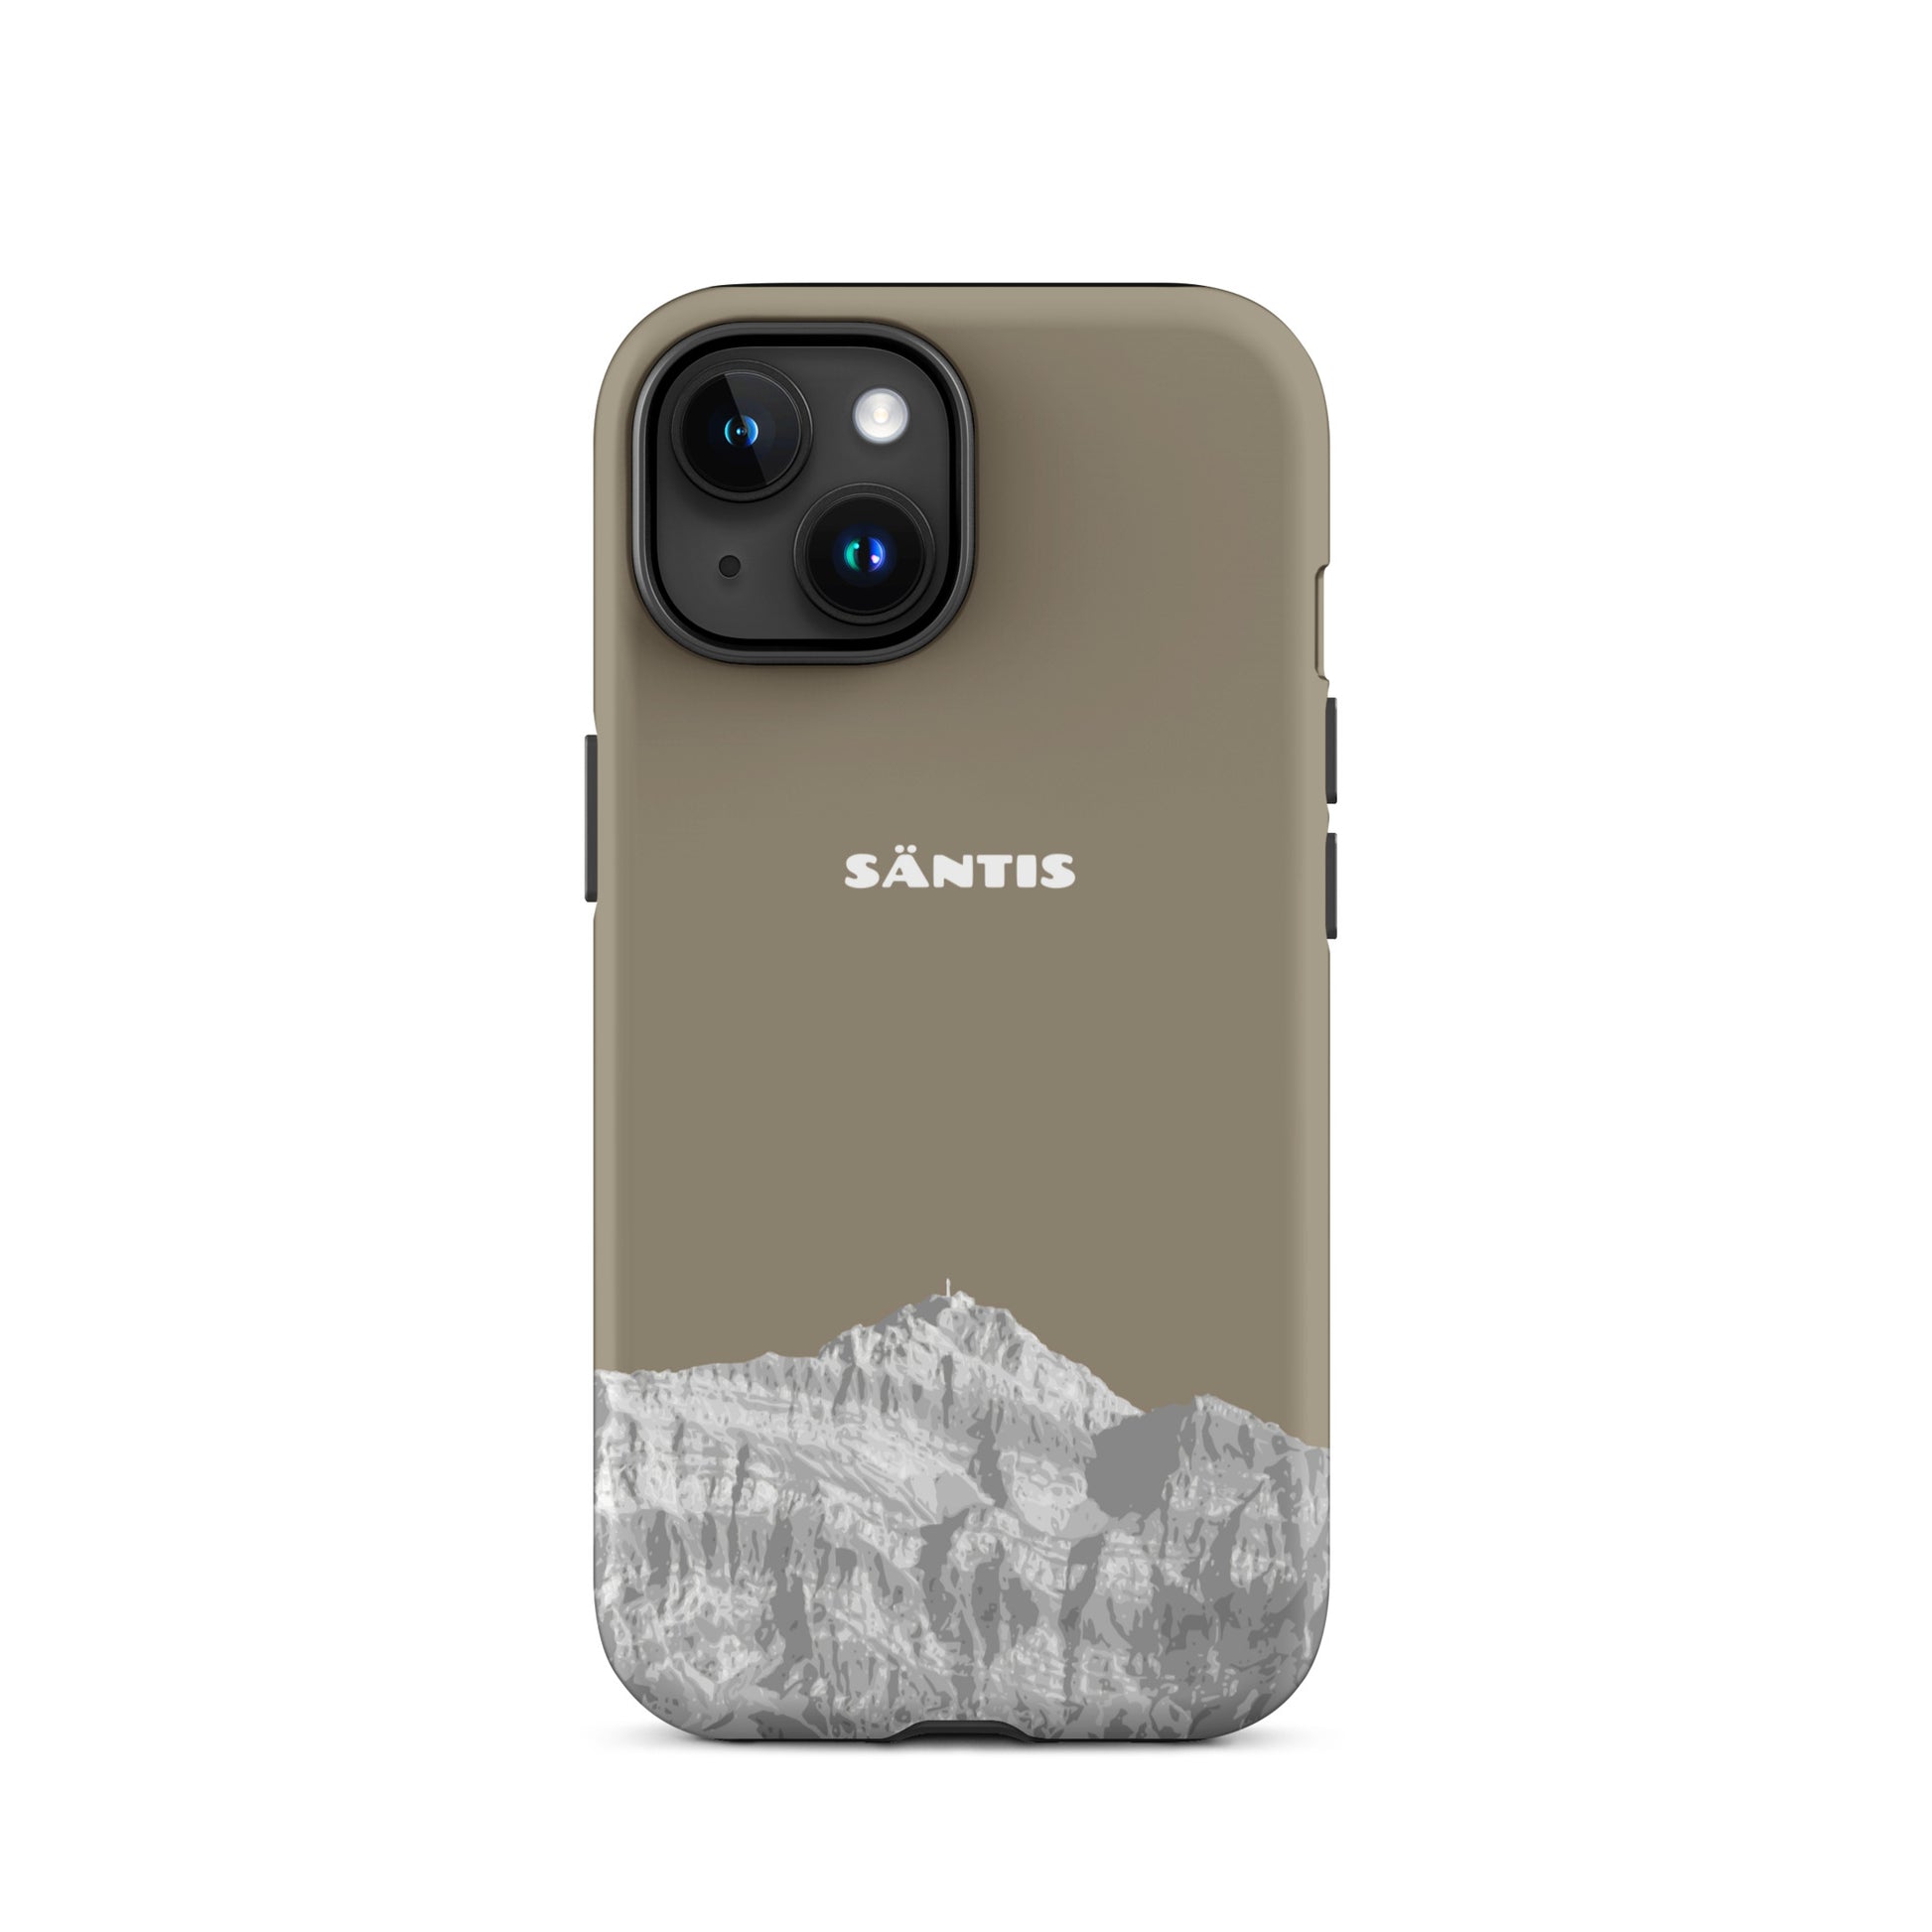 Hülle für das iPhone 15 von Apple in der Farbe Graubraun, dass den Säntis im Alpstein zeigt.